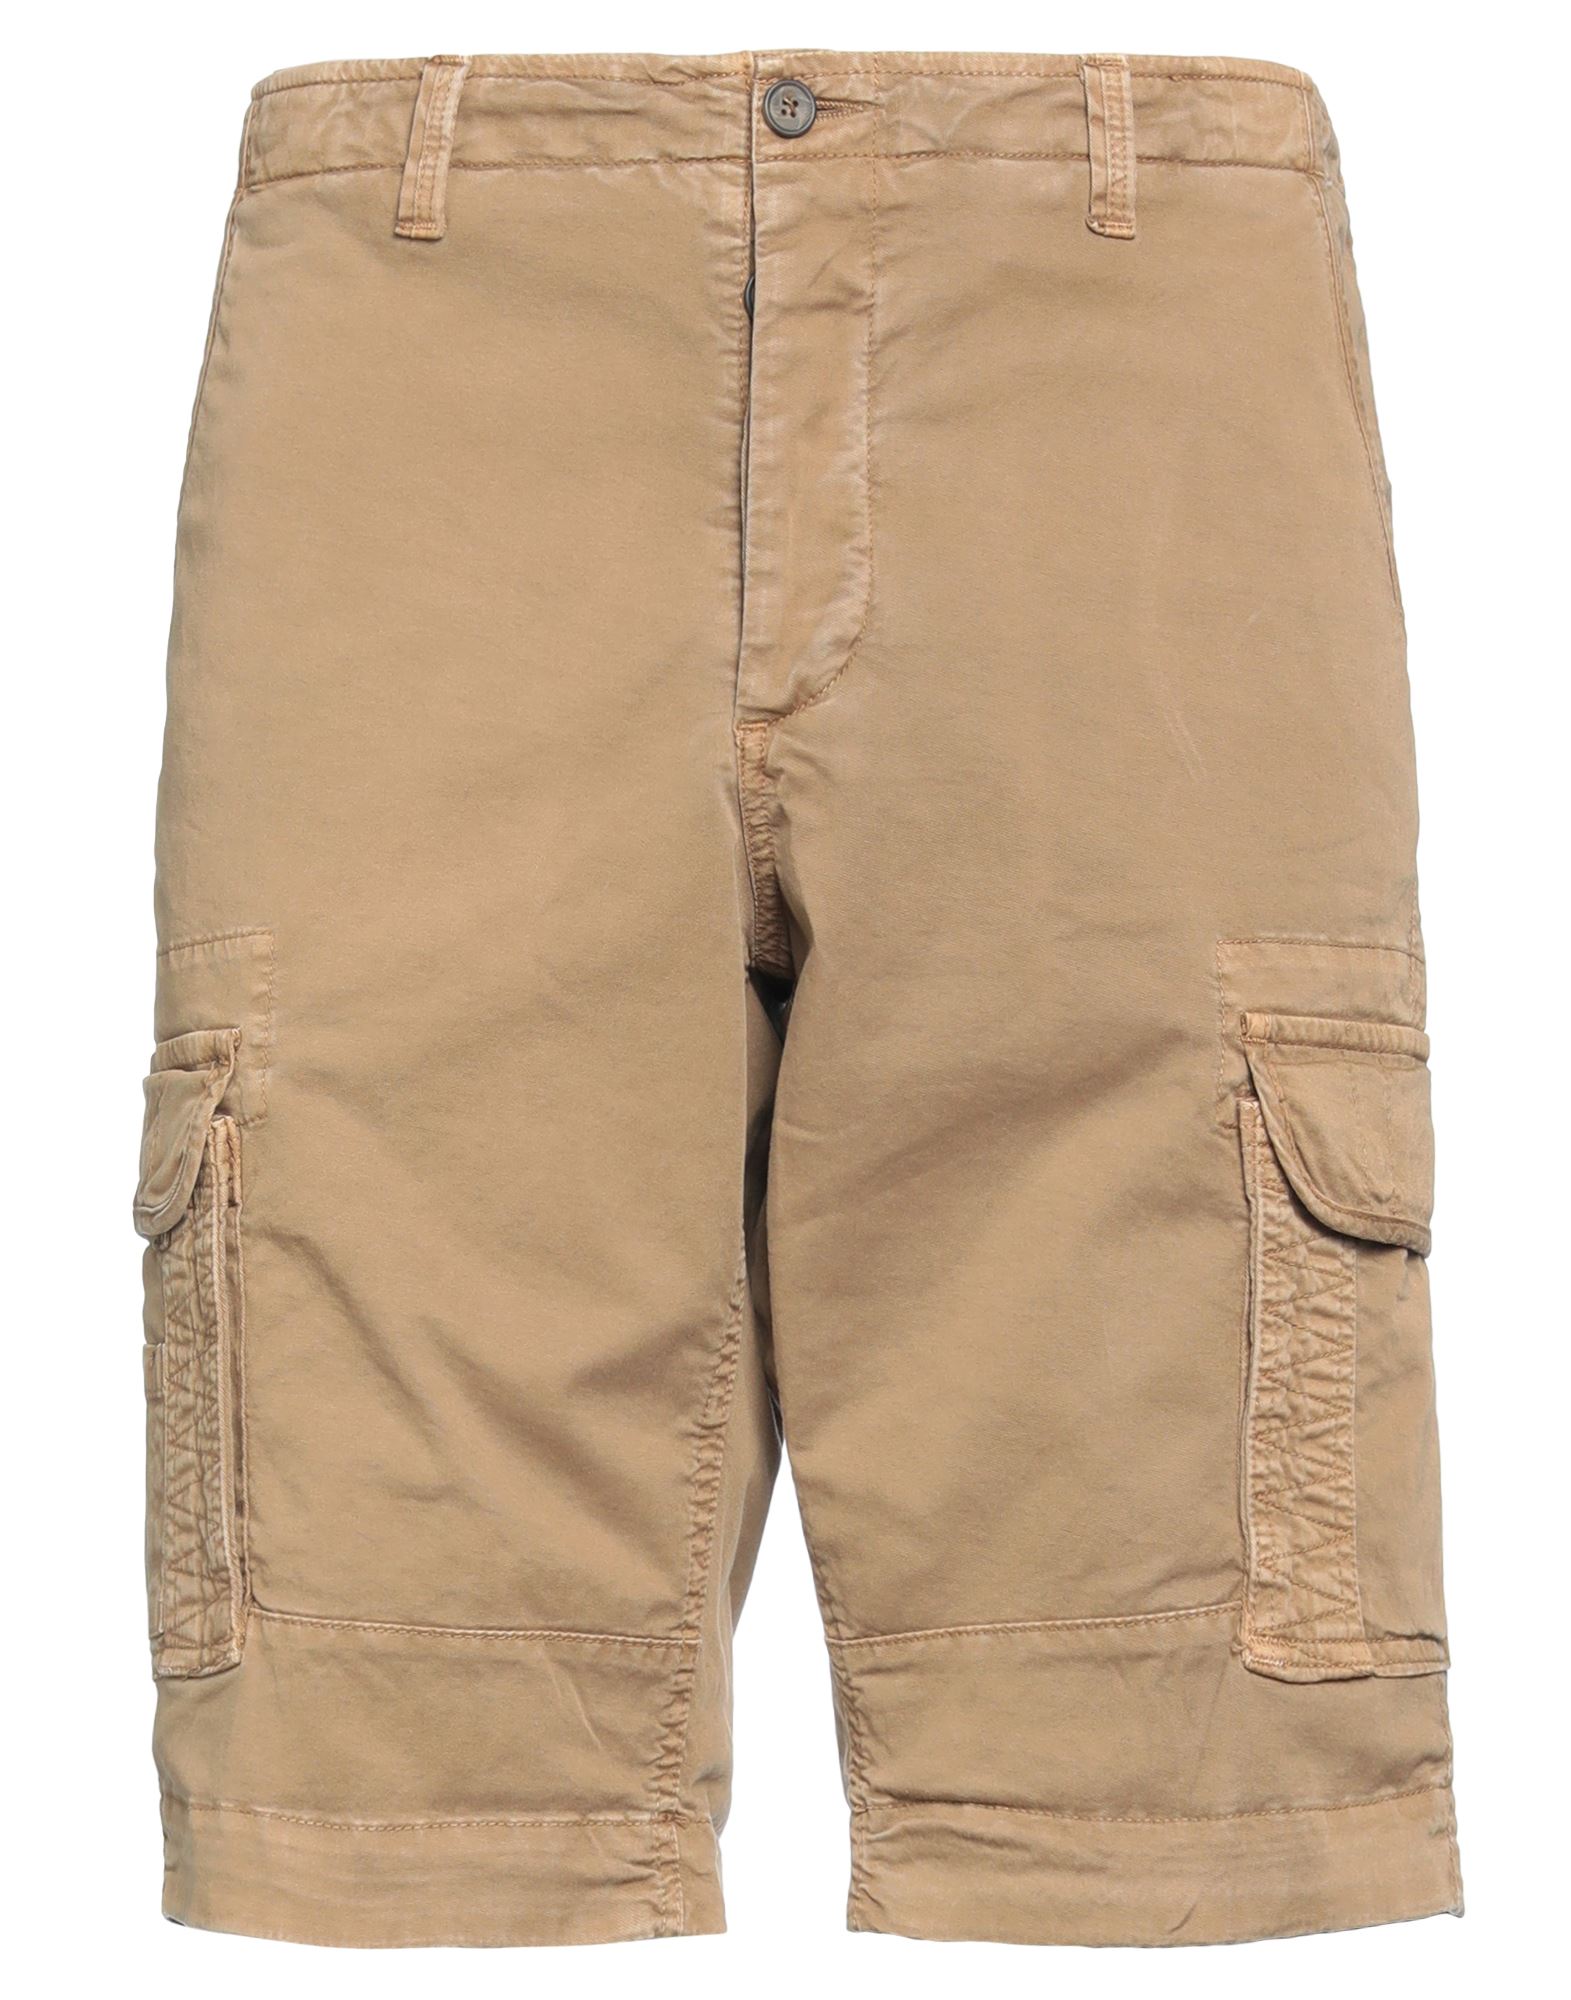 Rar Man Shorts & Bermuda Shorts Khaki Size 28 Cotton, Elastane In Beige